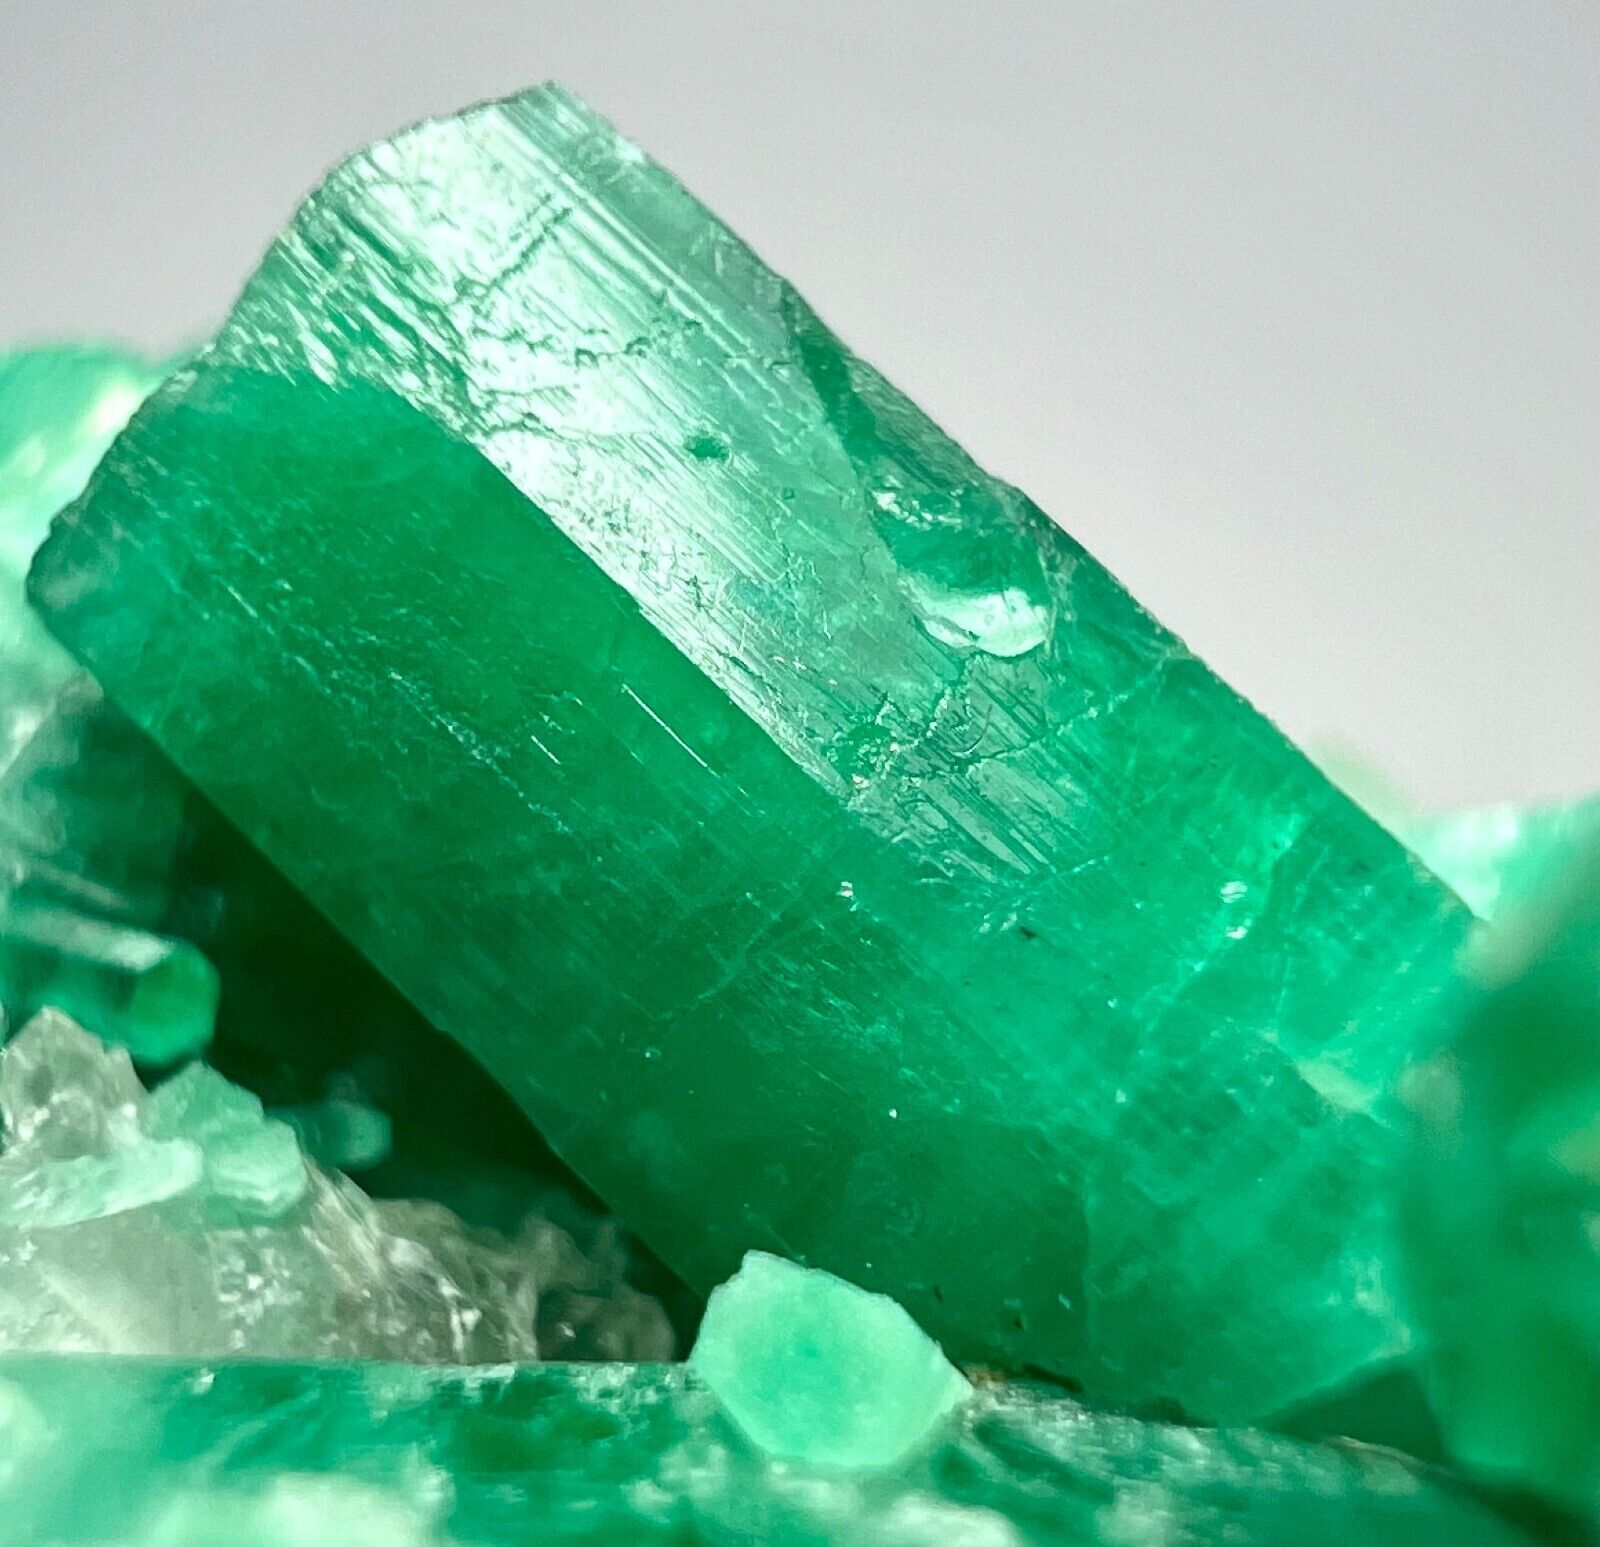 Amazing Panjshir Top Green Emerald Crystals Bunch With Matrix @AFG. 165 Carats